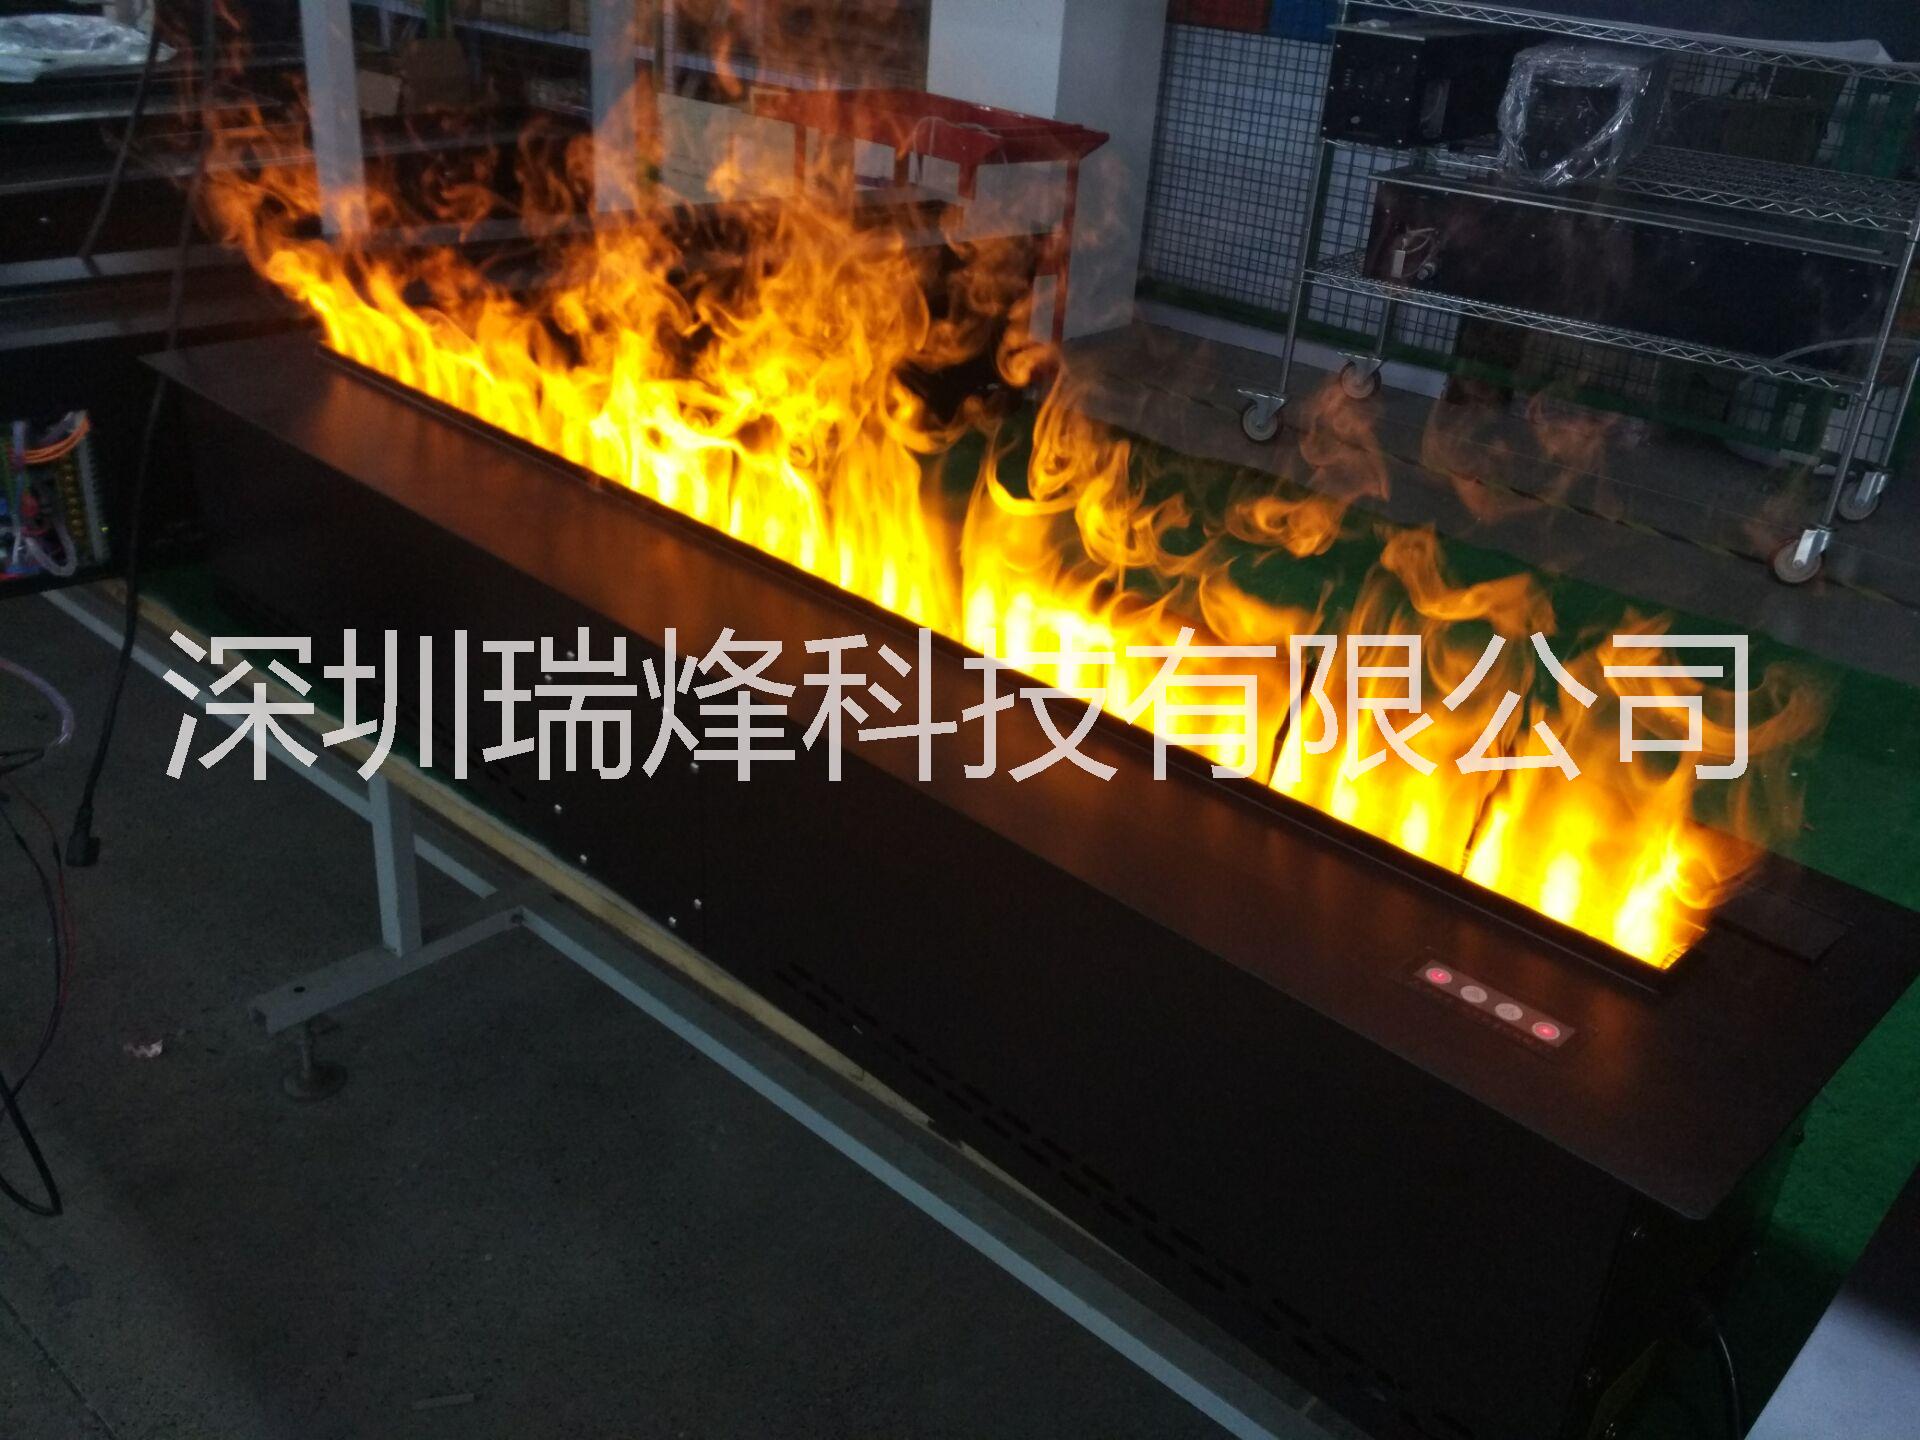 供应深圳工厂推荐壁炉认证壁炉电暖炉 工厂直销3D雾化壁炉  蒸汽壁炉